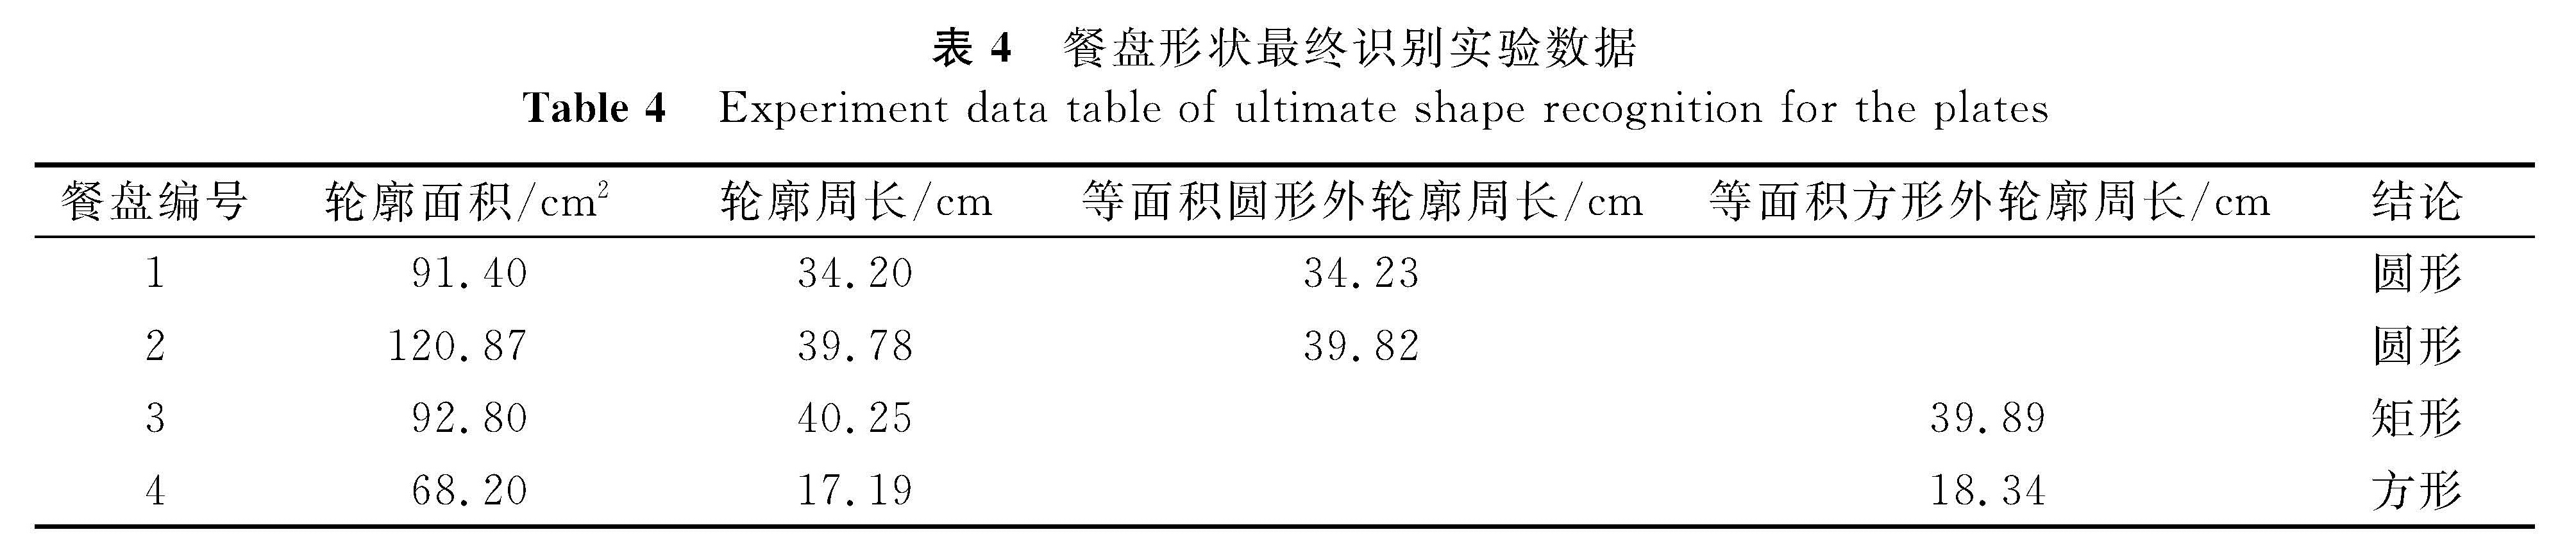 表4 餐盘形状最终识别实验数据<br/>Table 4 Experiment data table of ultimate shape recognition for the plates